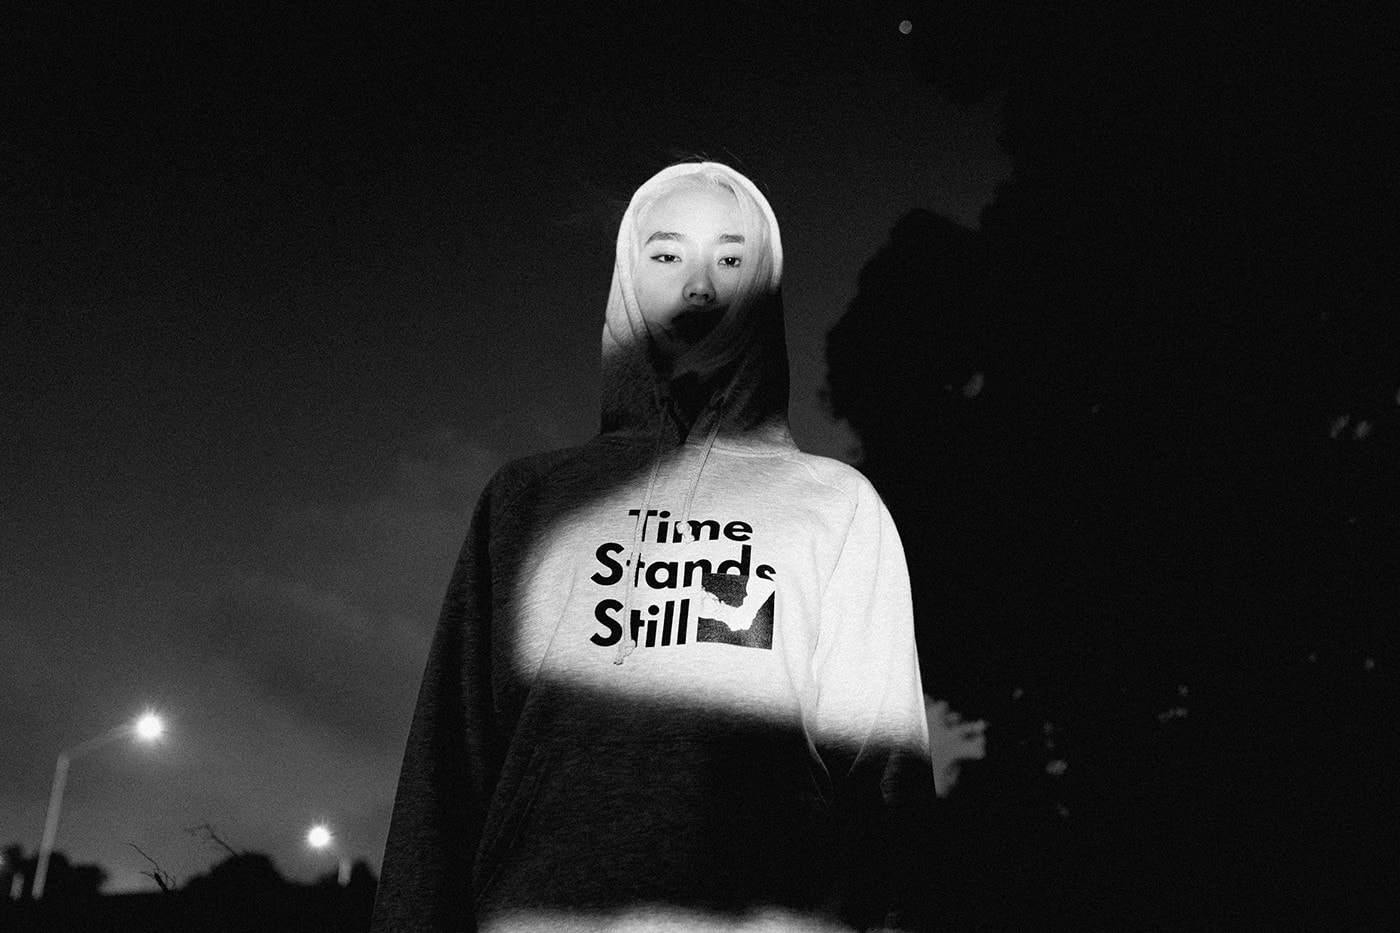 音樂人 Ta-Ku 正式發佈其個人品牌 823 首個系列「Time Stands Still」